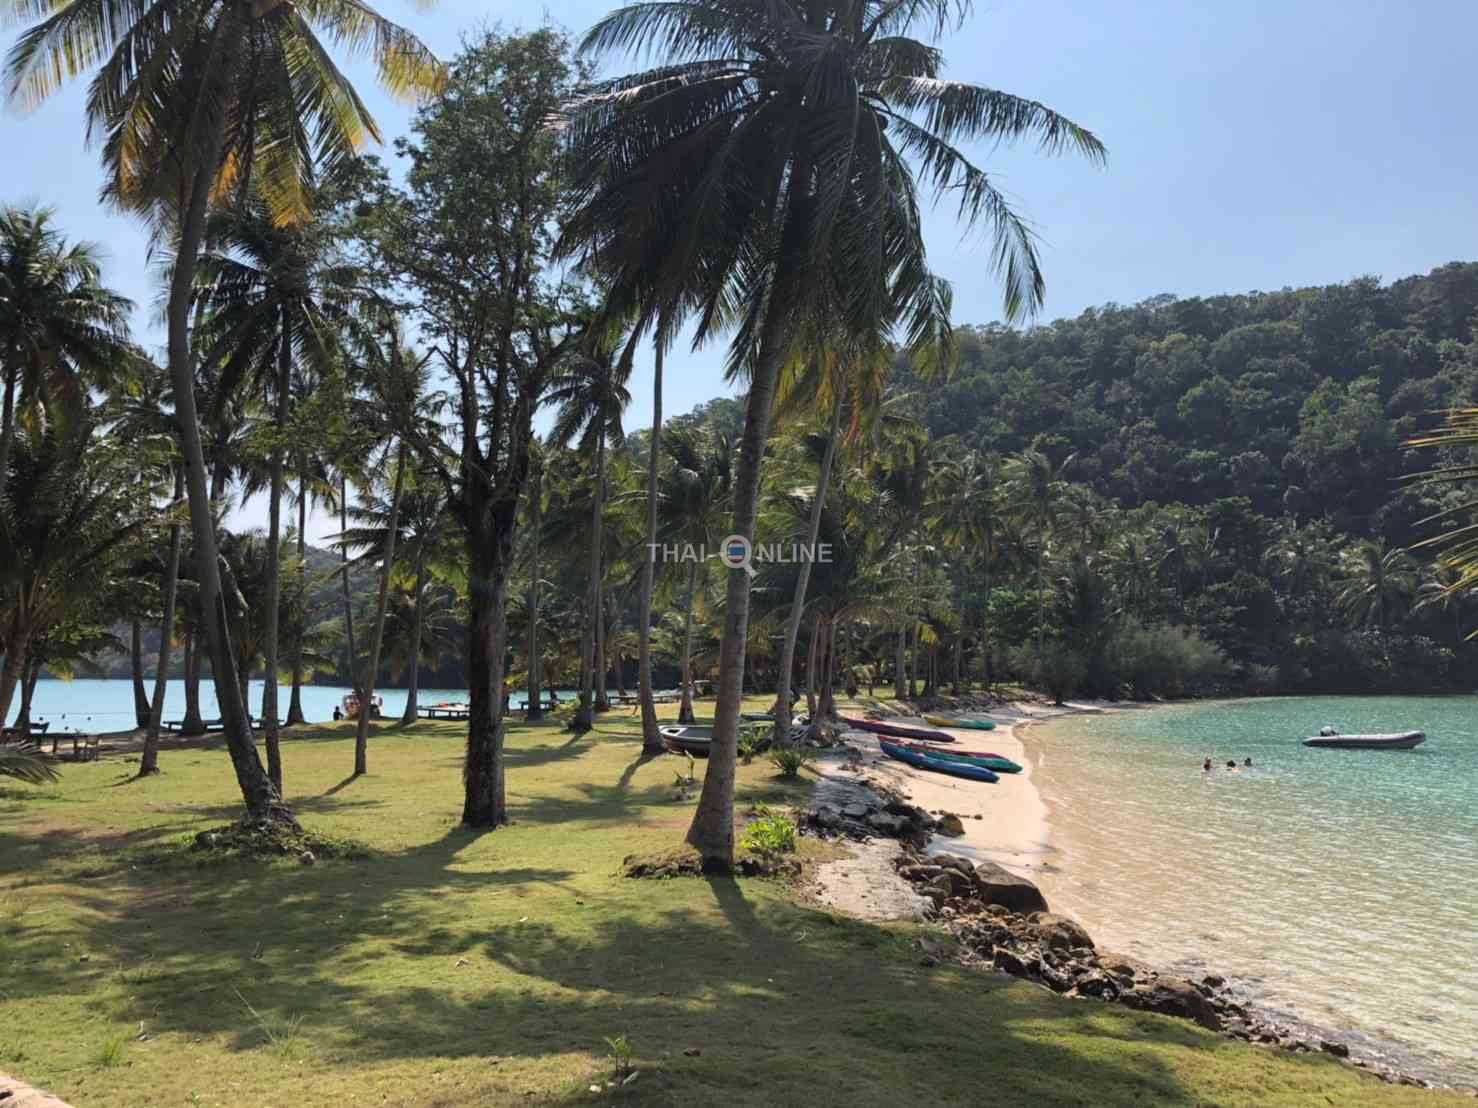 Купить экскурсию Сиамский Пролив на Ко Нгам со скидкой онлайн в Паттае